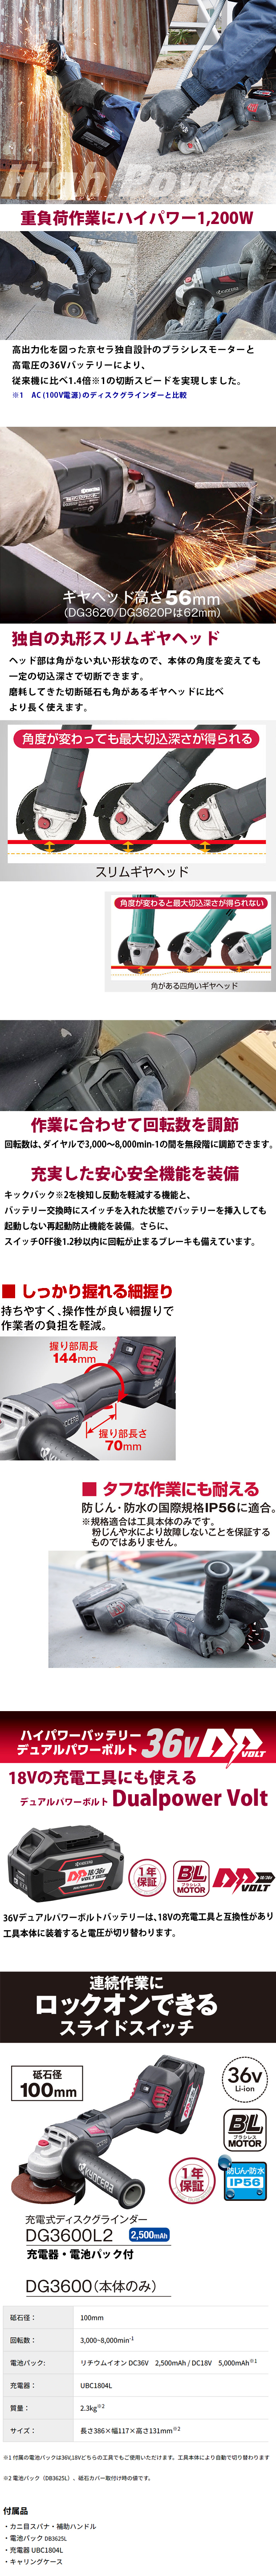 京セラ 充電式ディスクグラインダ DG3600L2 砥石径100mm スライドスイッチ